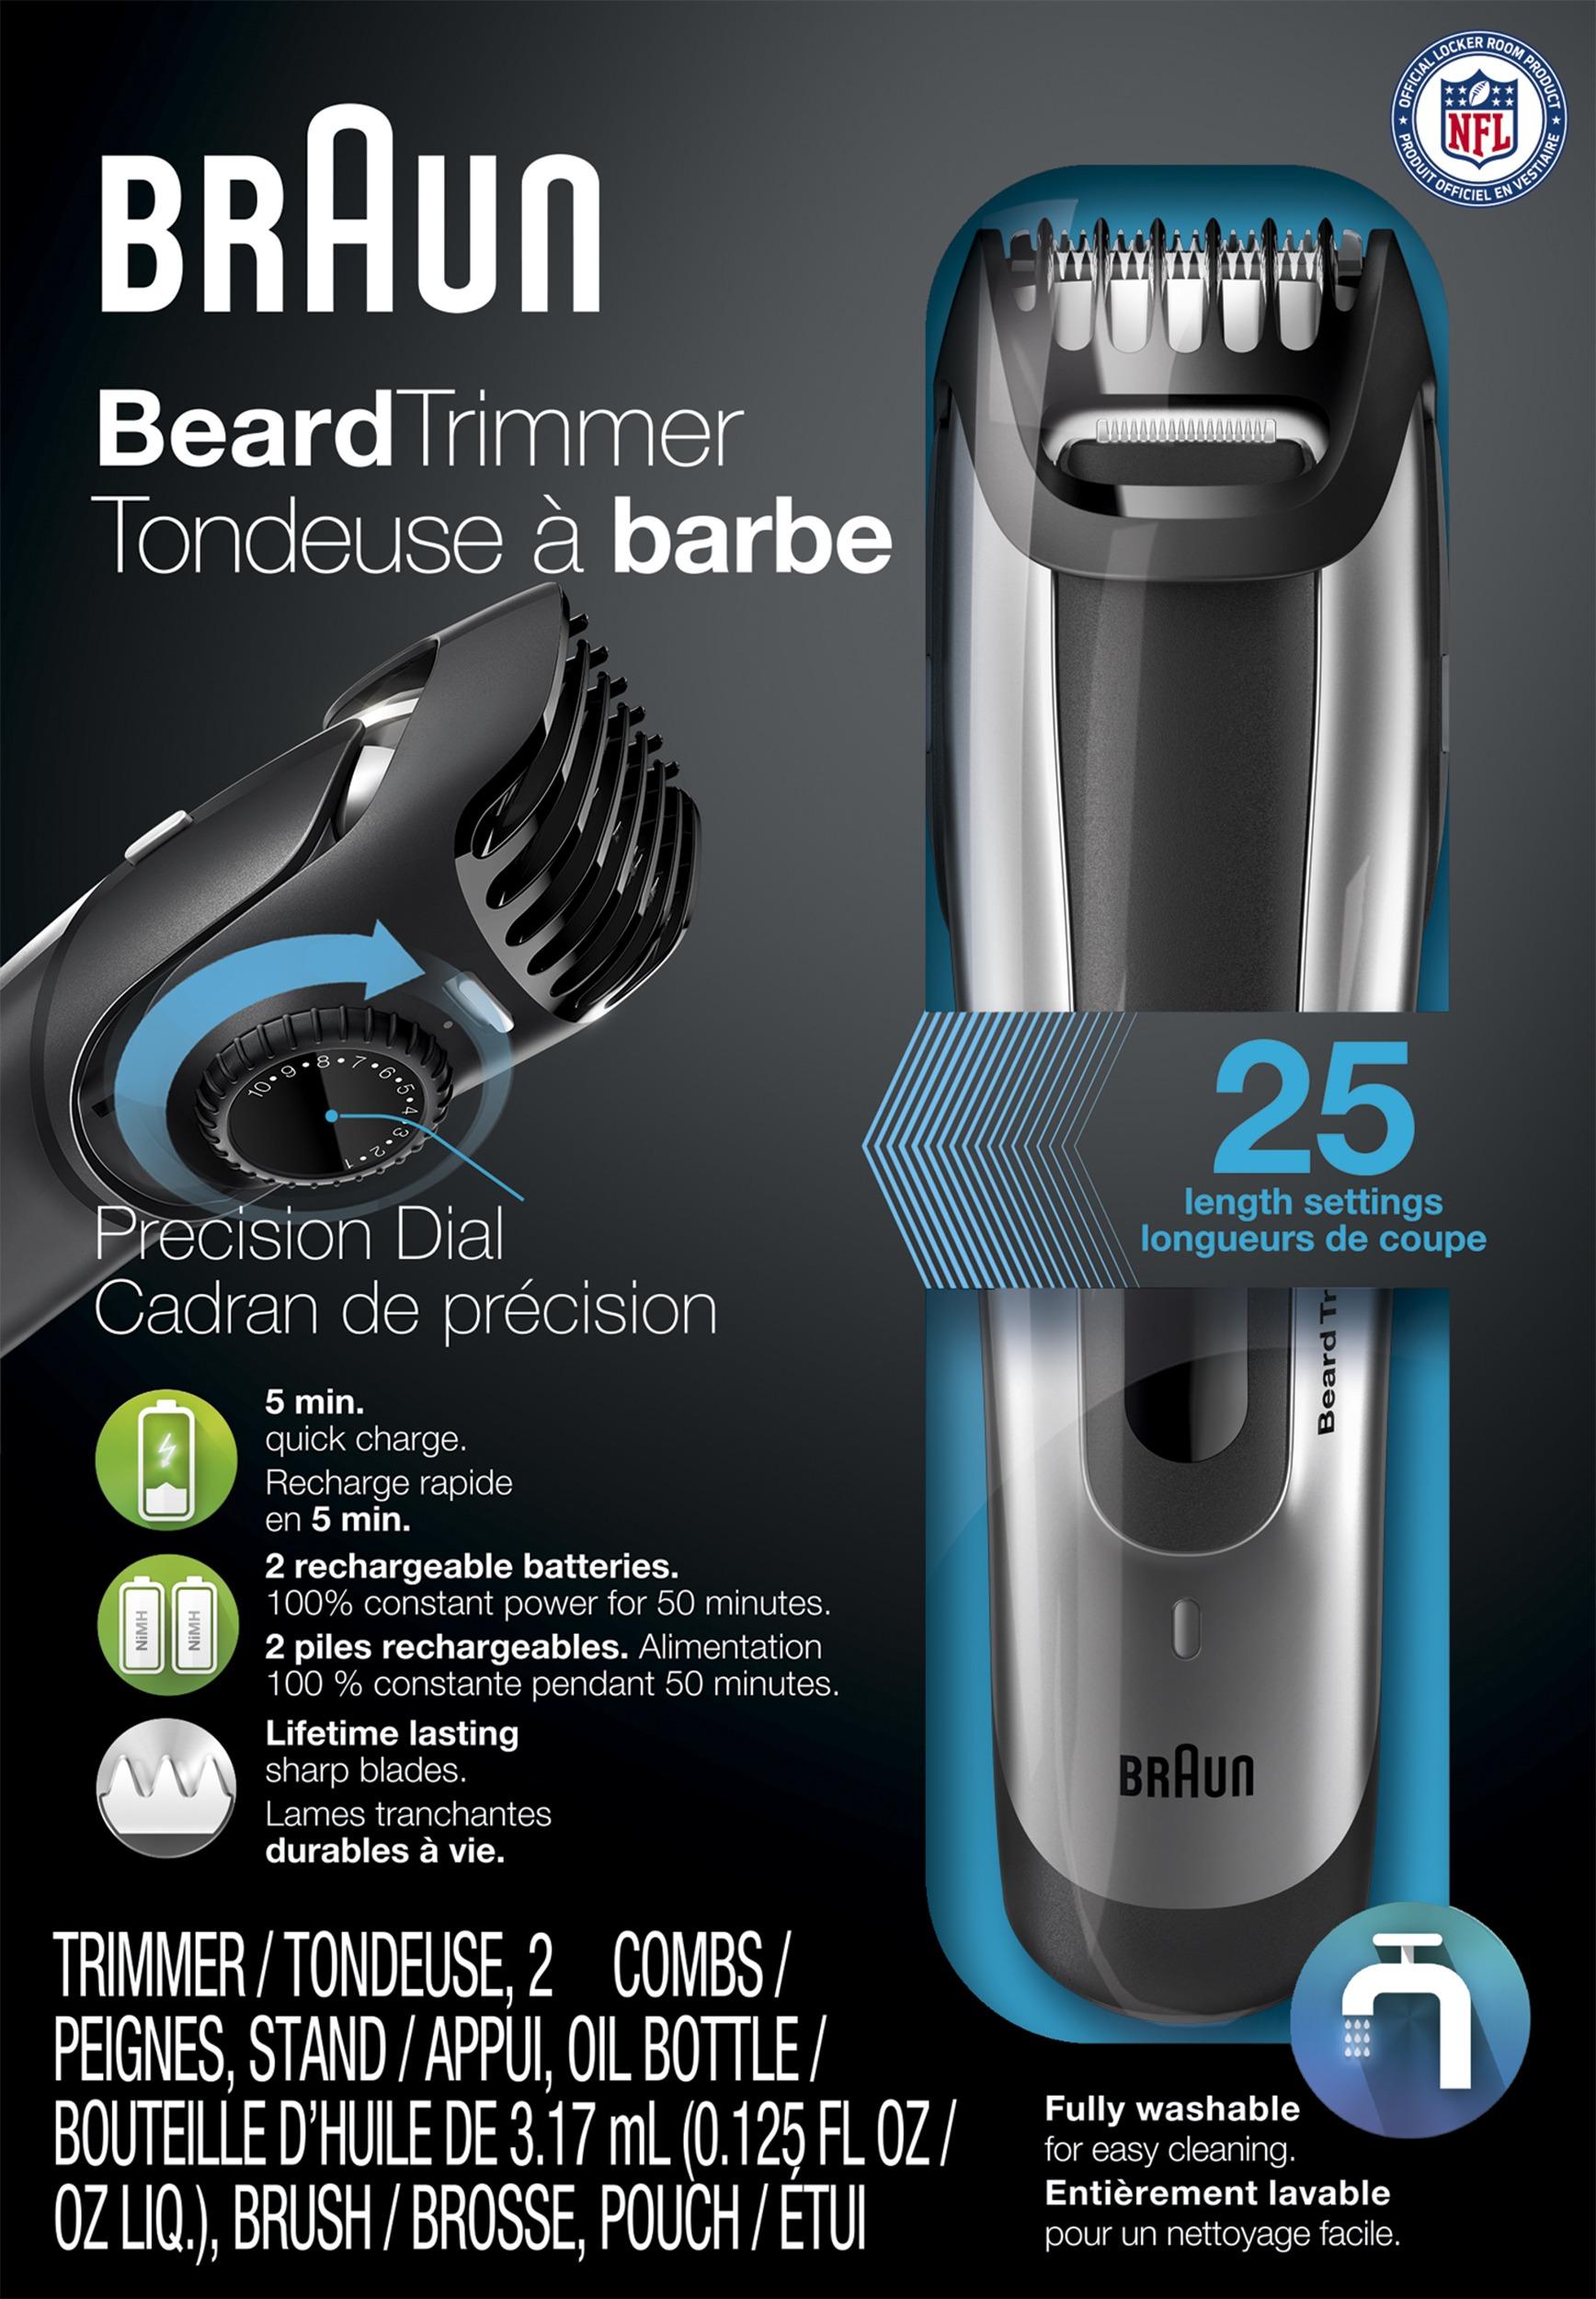 braun beard trimmer bt5090 charger